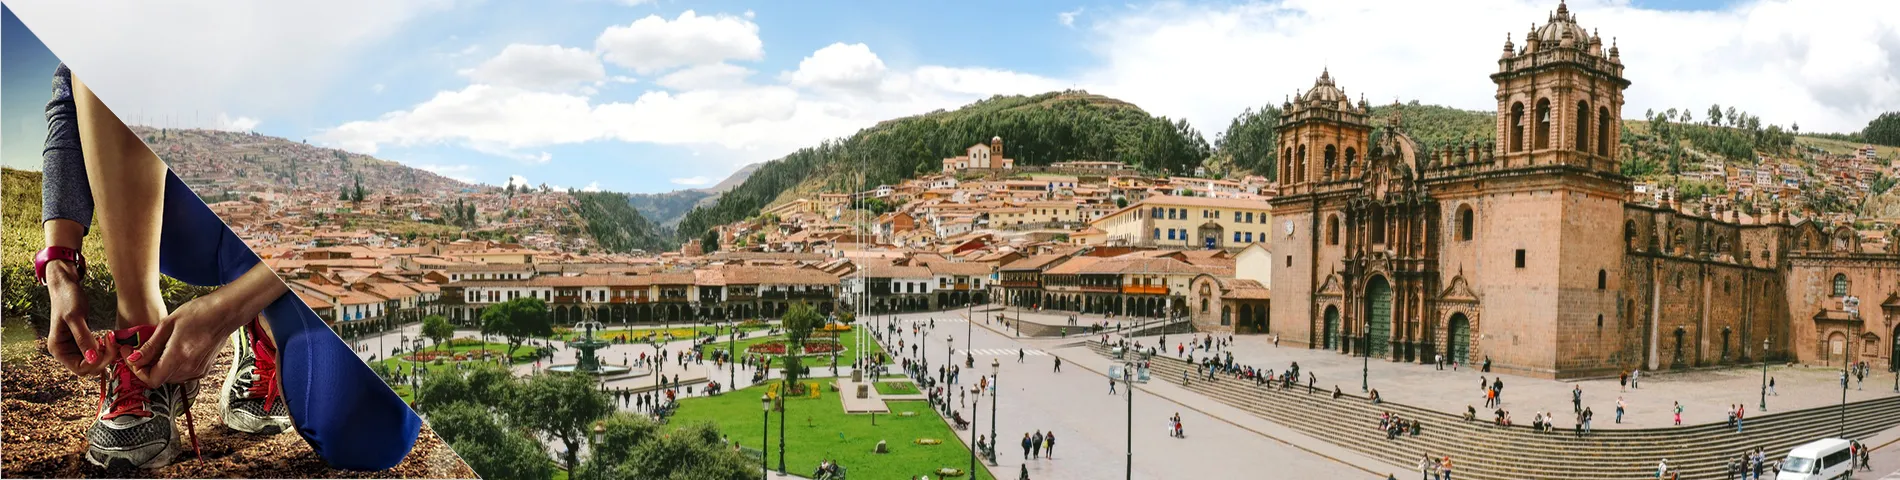 Cuzco - Espanyol i Altres esports